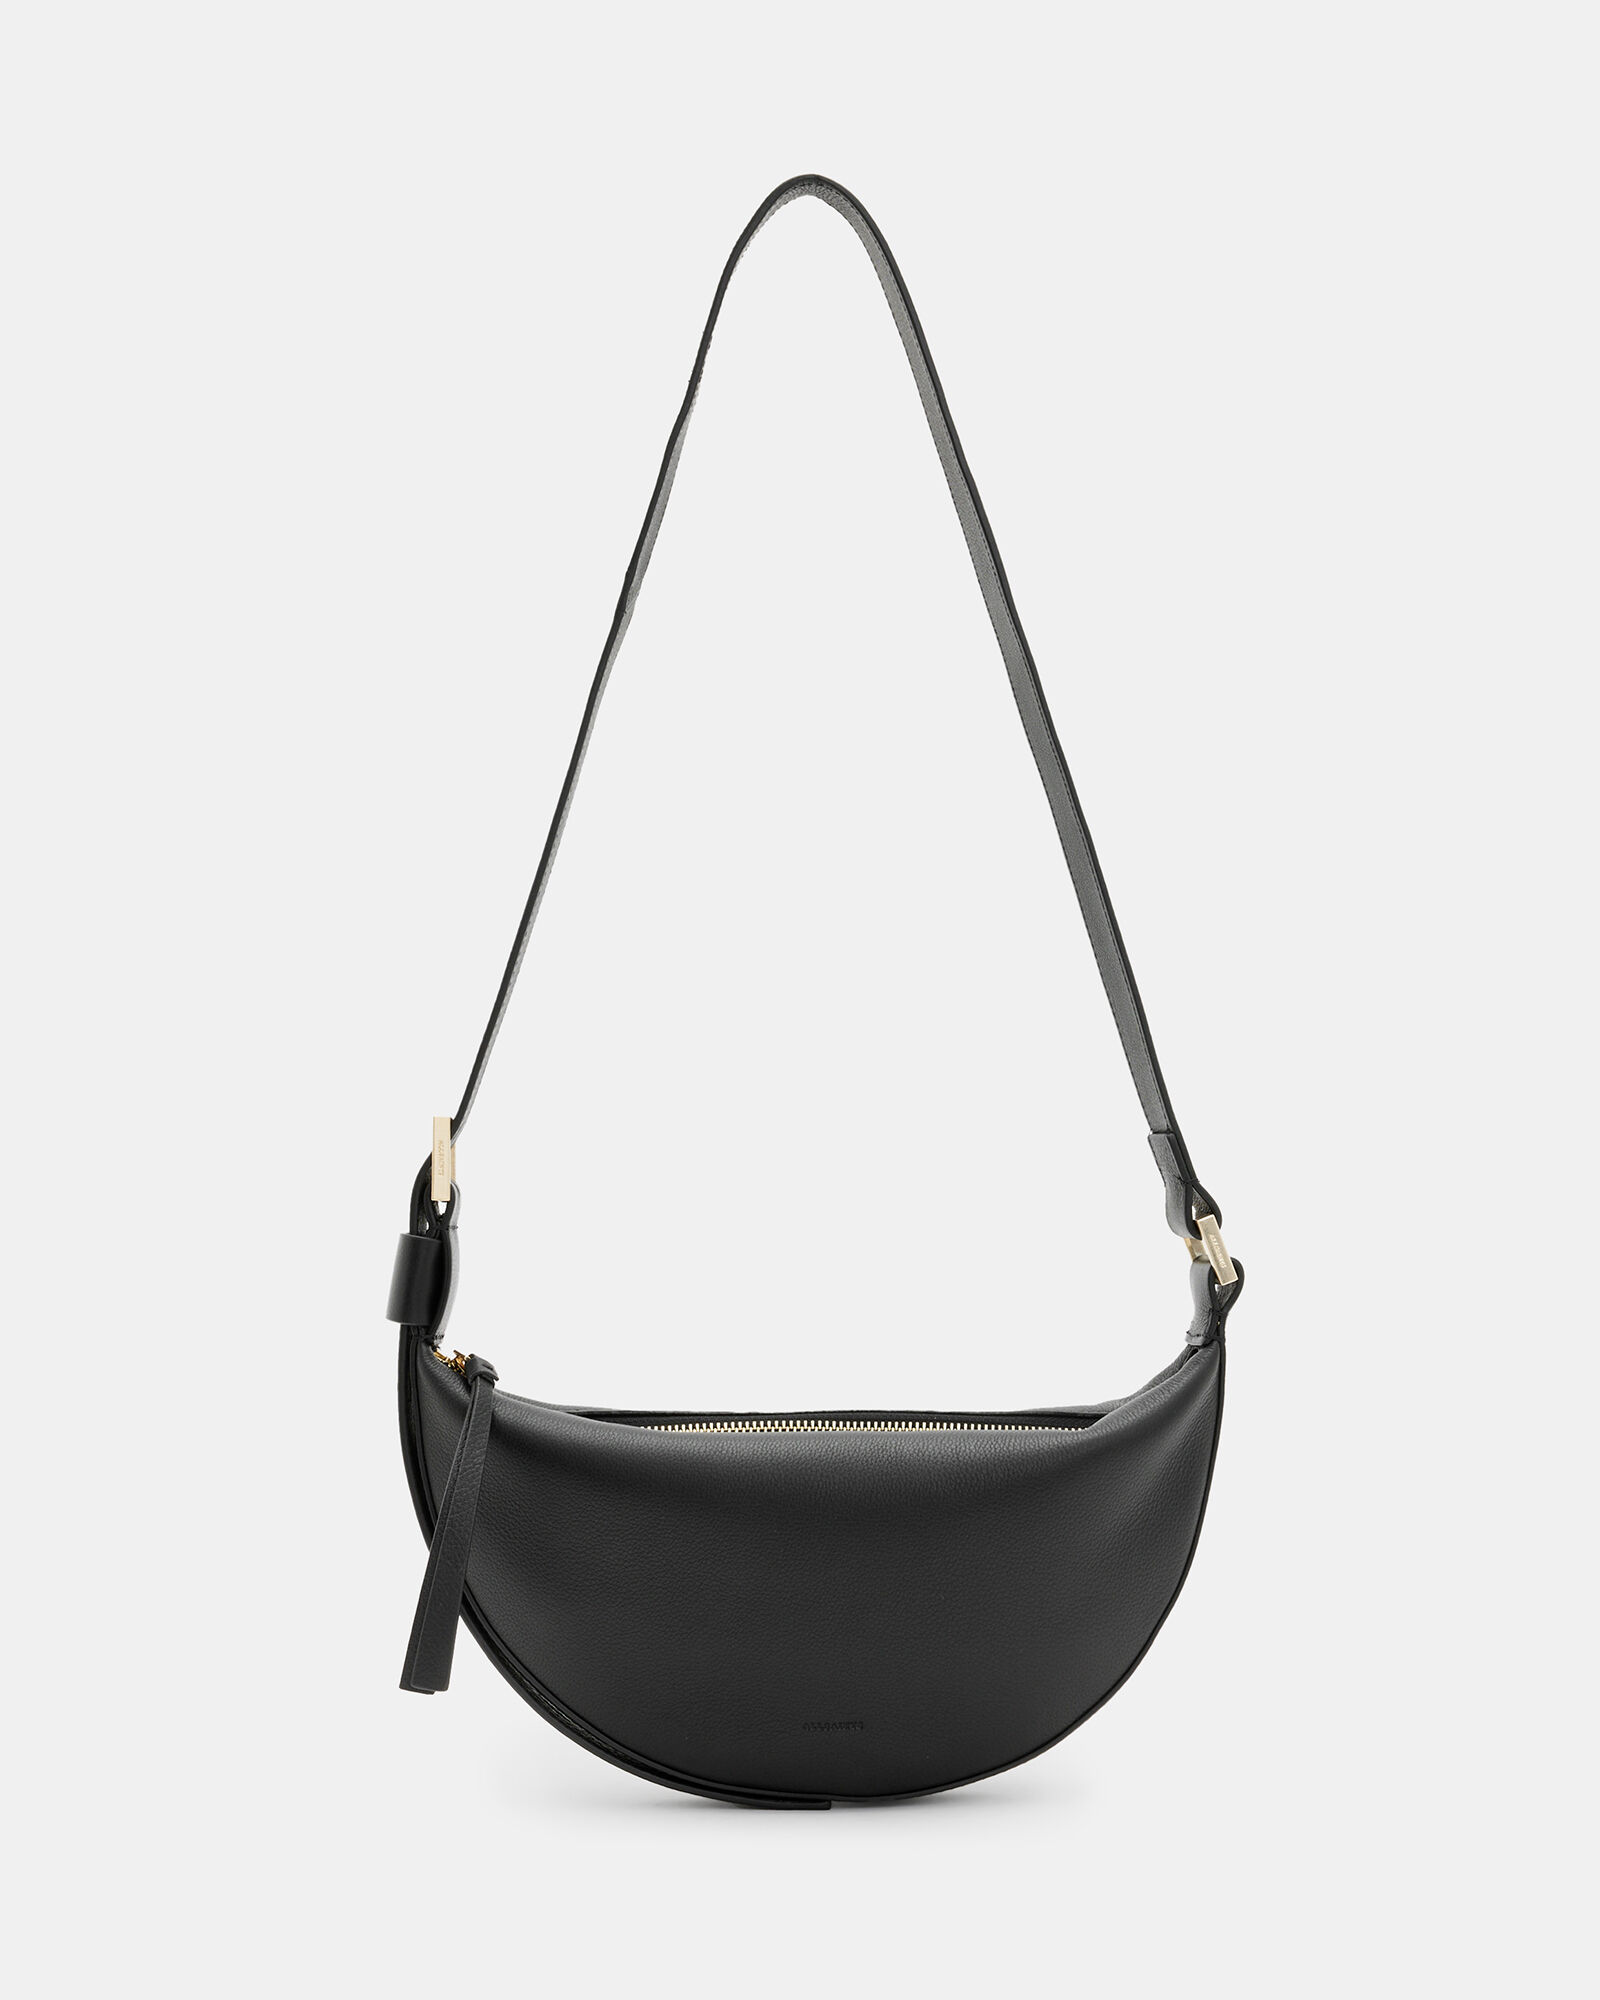 Women's Work Bags - Grab, Tote & Laptop Bags – Strandbags Australia